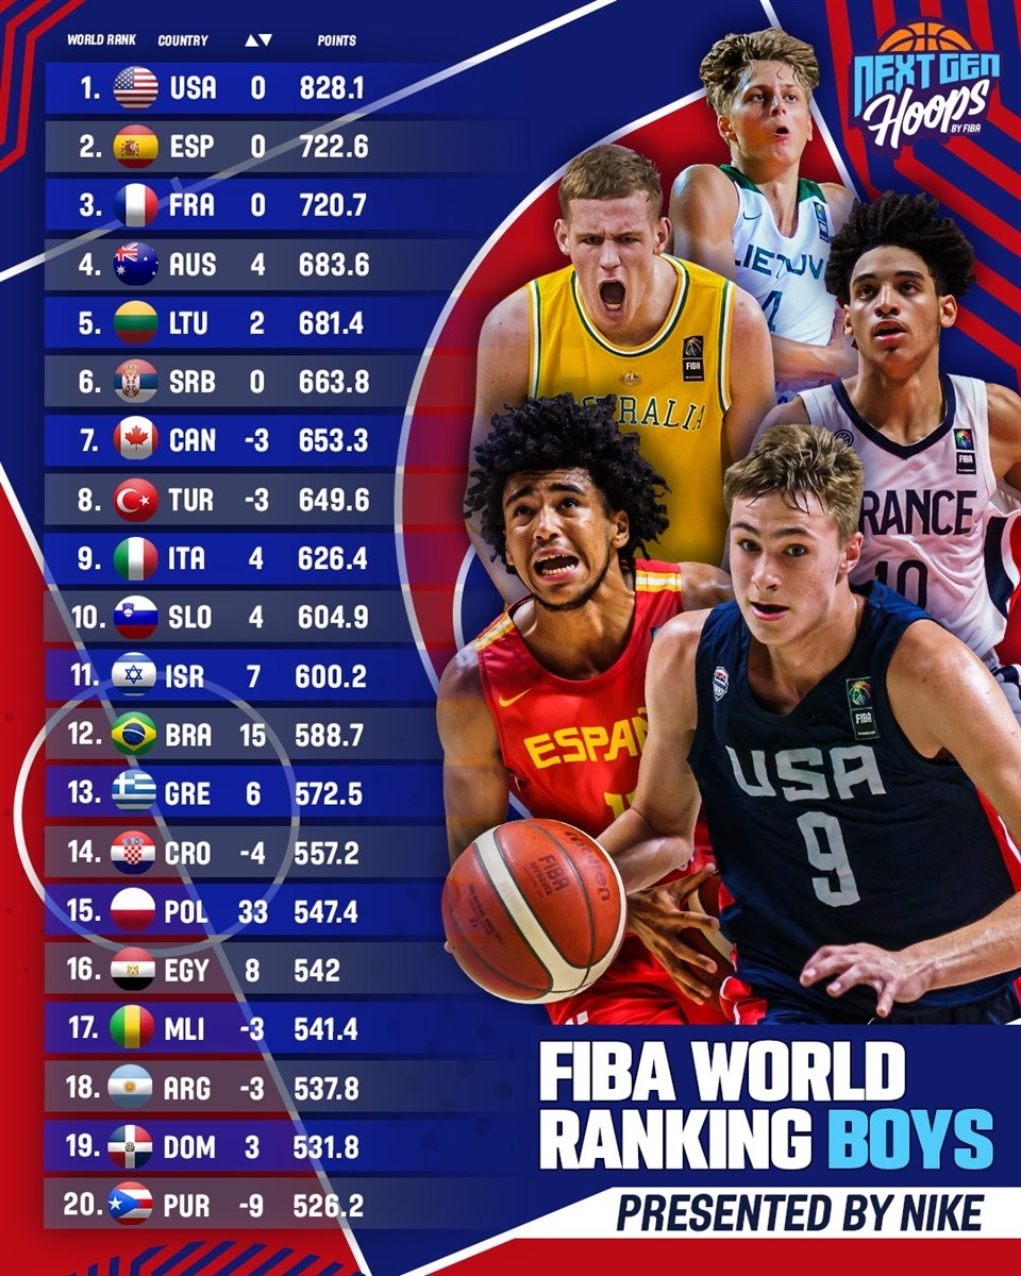 “Σκαρφάλωσαν” 6 θέσεις στη FIBA οι… μικρές Εθνικές